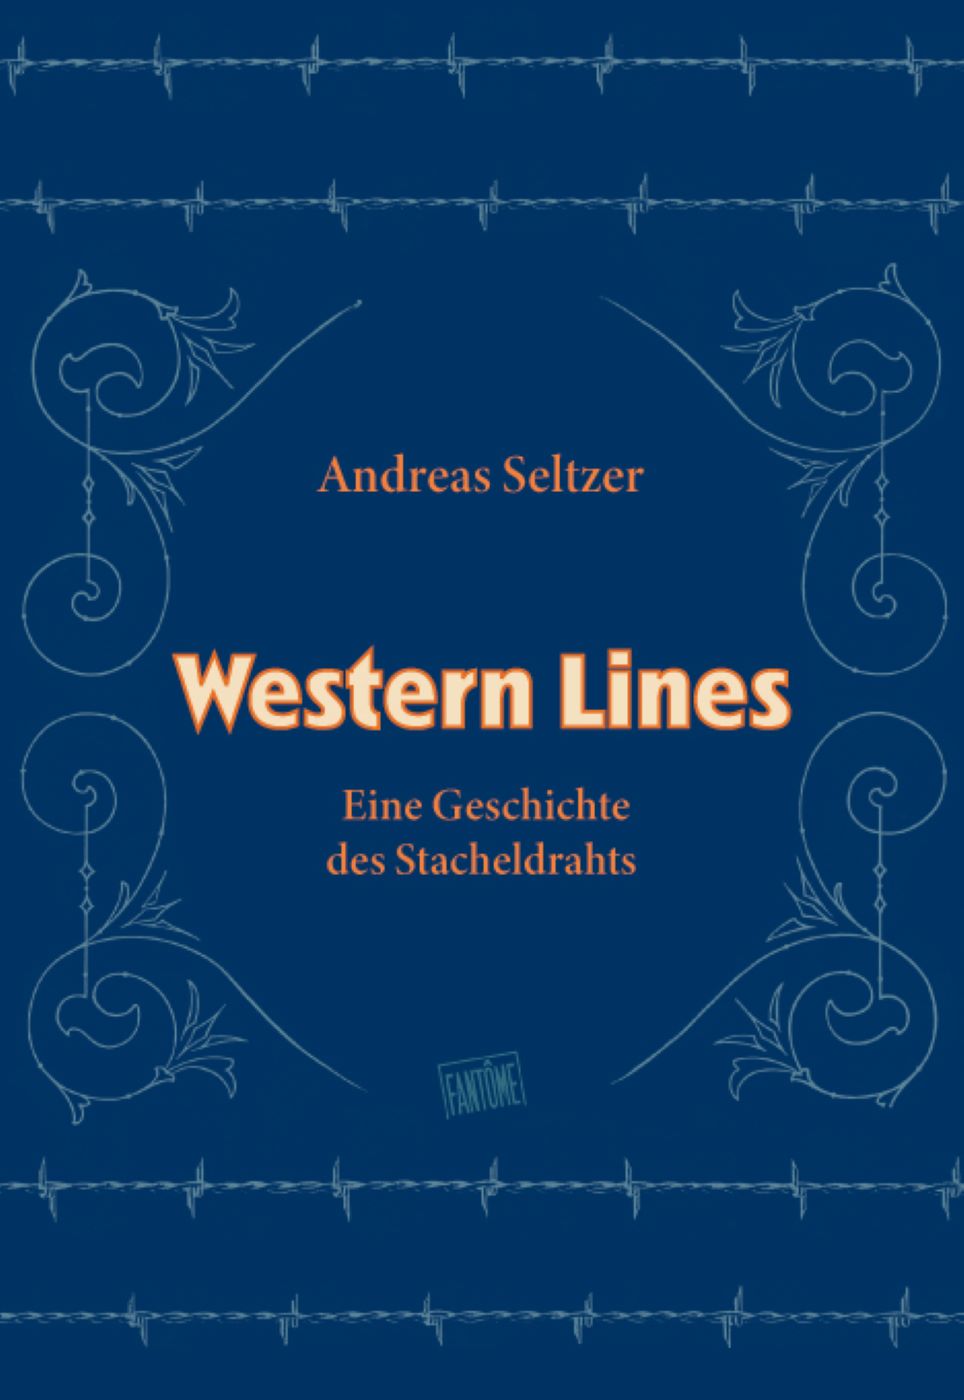 Andreas Seltzer – Western Lines. Eine Geschichte des Stacheldrahts